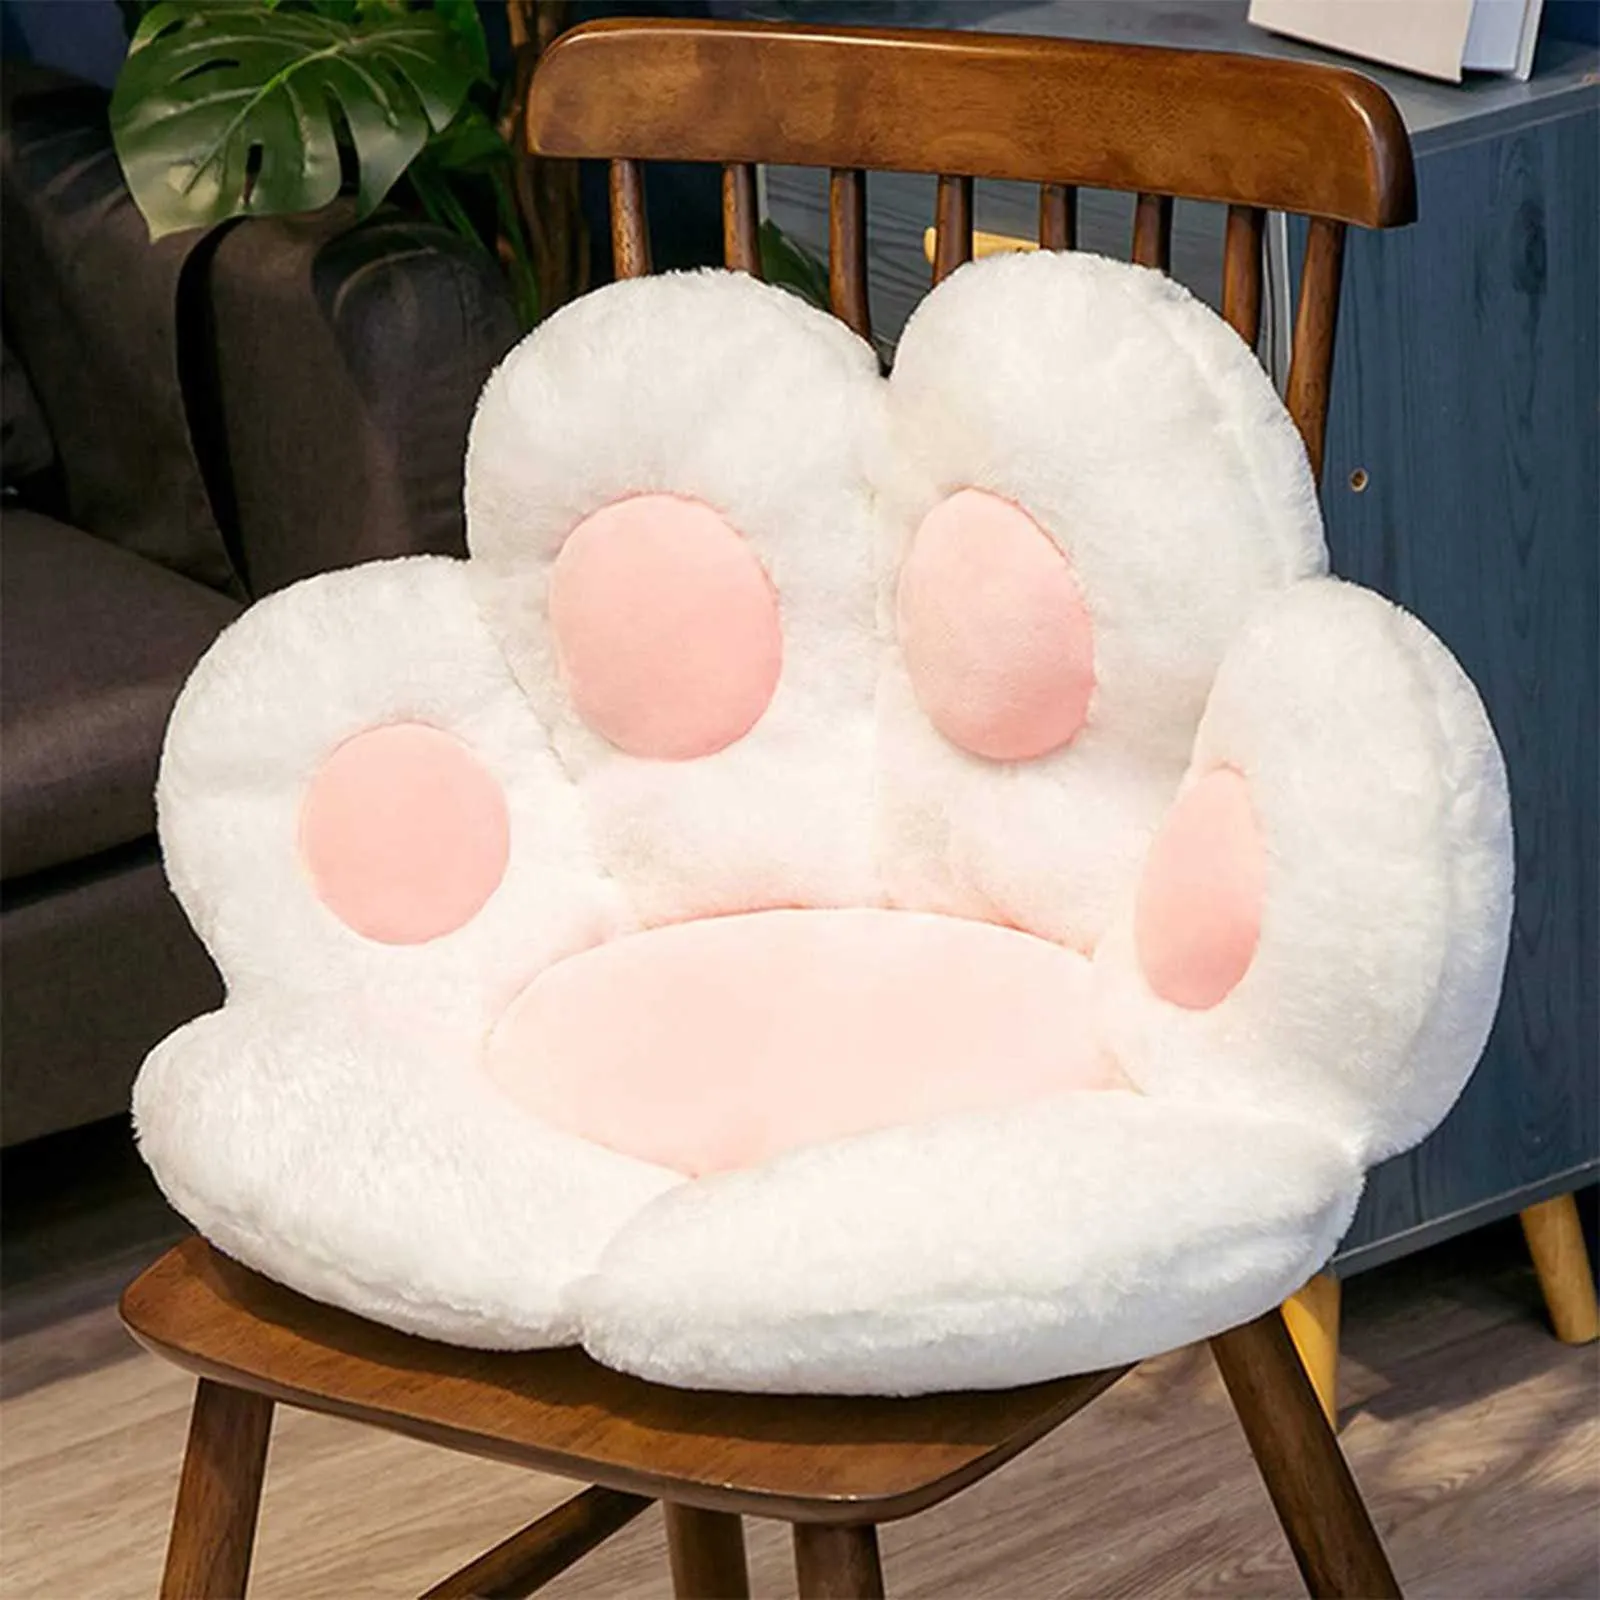 Simpatico gatto zampa posteriore cuscini peluche cuscino sedia animale bambino cuscino del sedile divano stuoia divano di casa pavimento interno inverno arredamento regalog35 21062378632